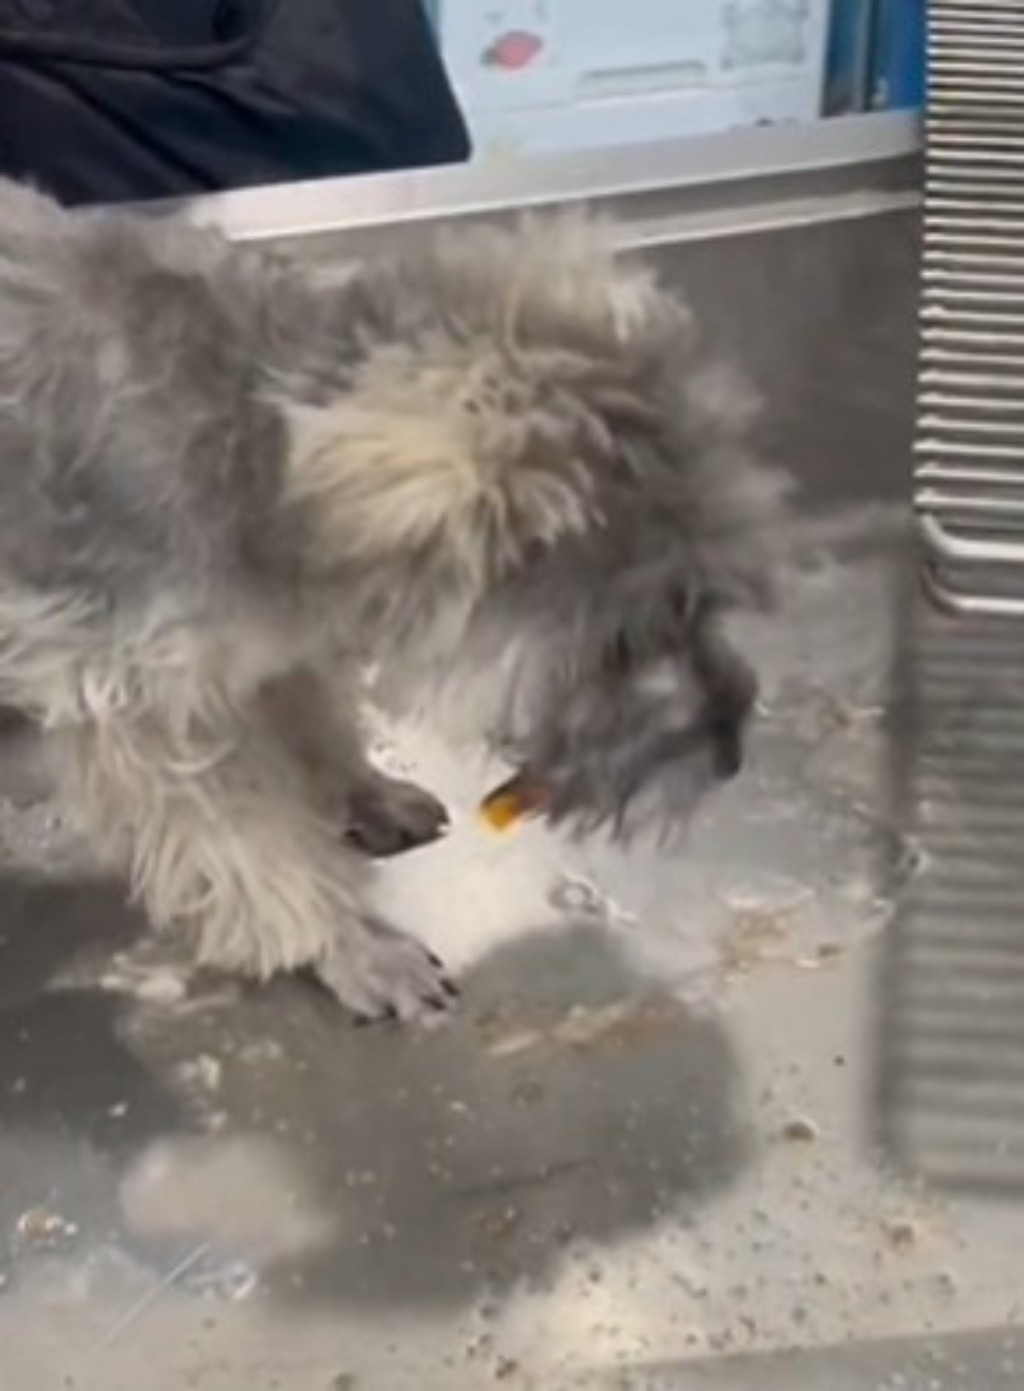 小狗被送到医院进行催吐和洗胃。 影片截图